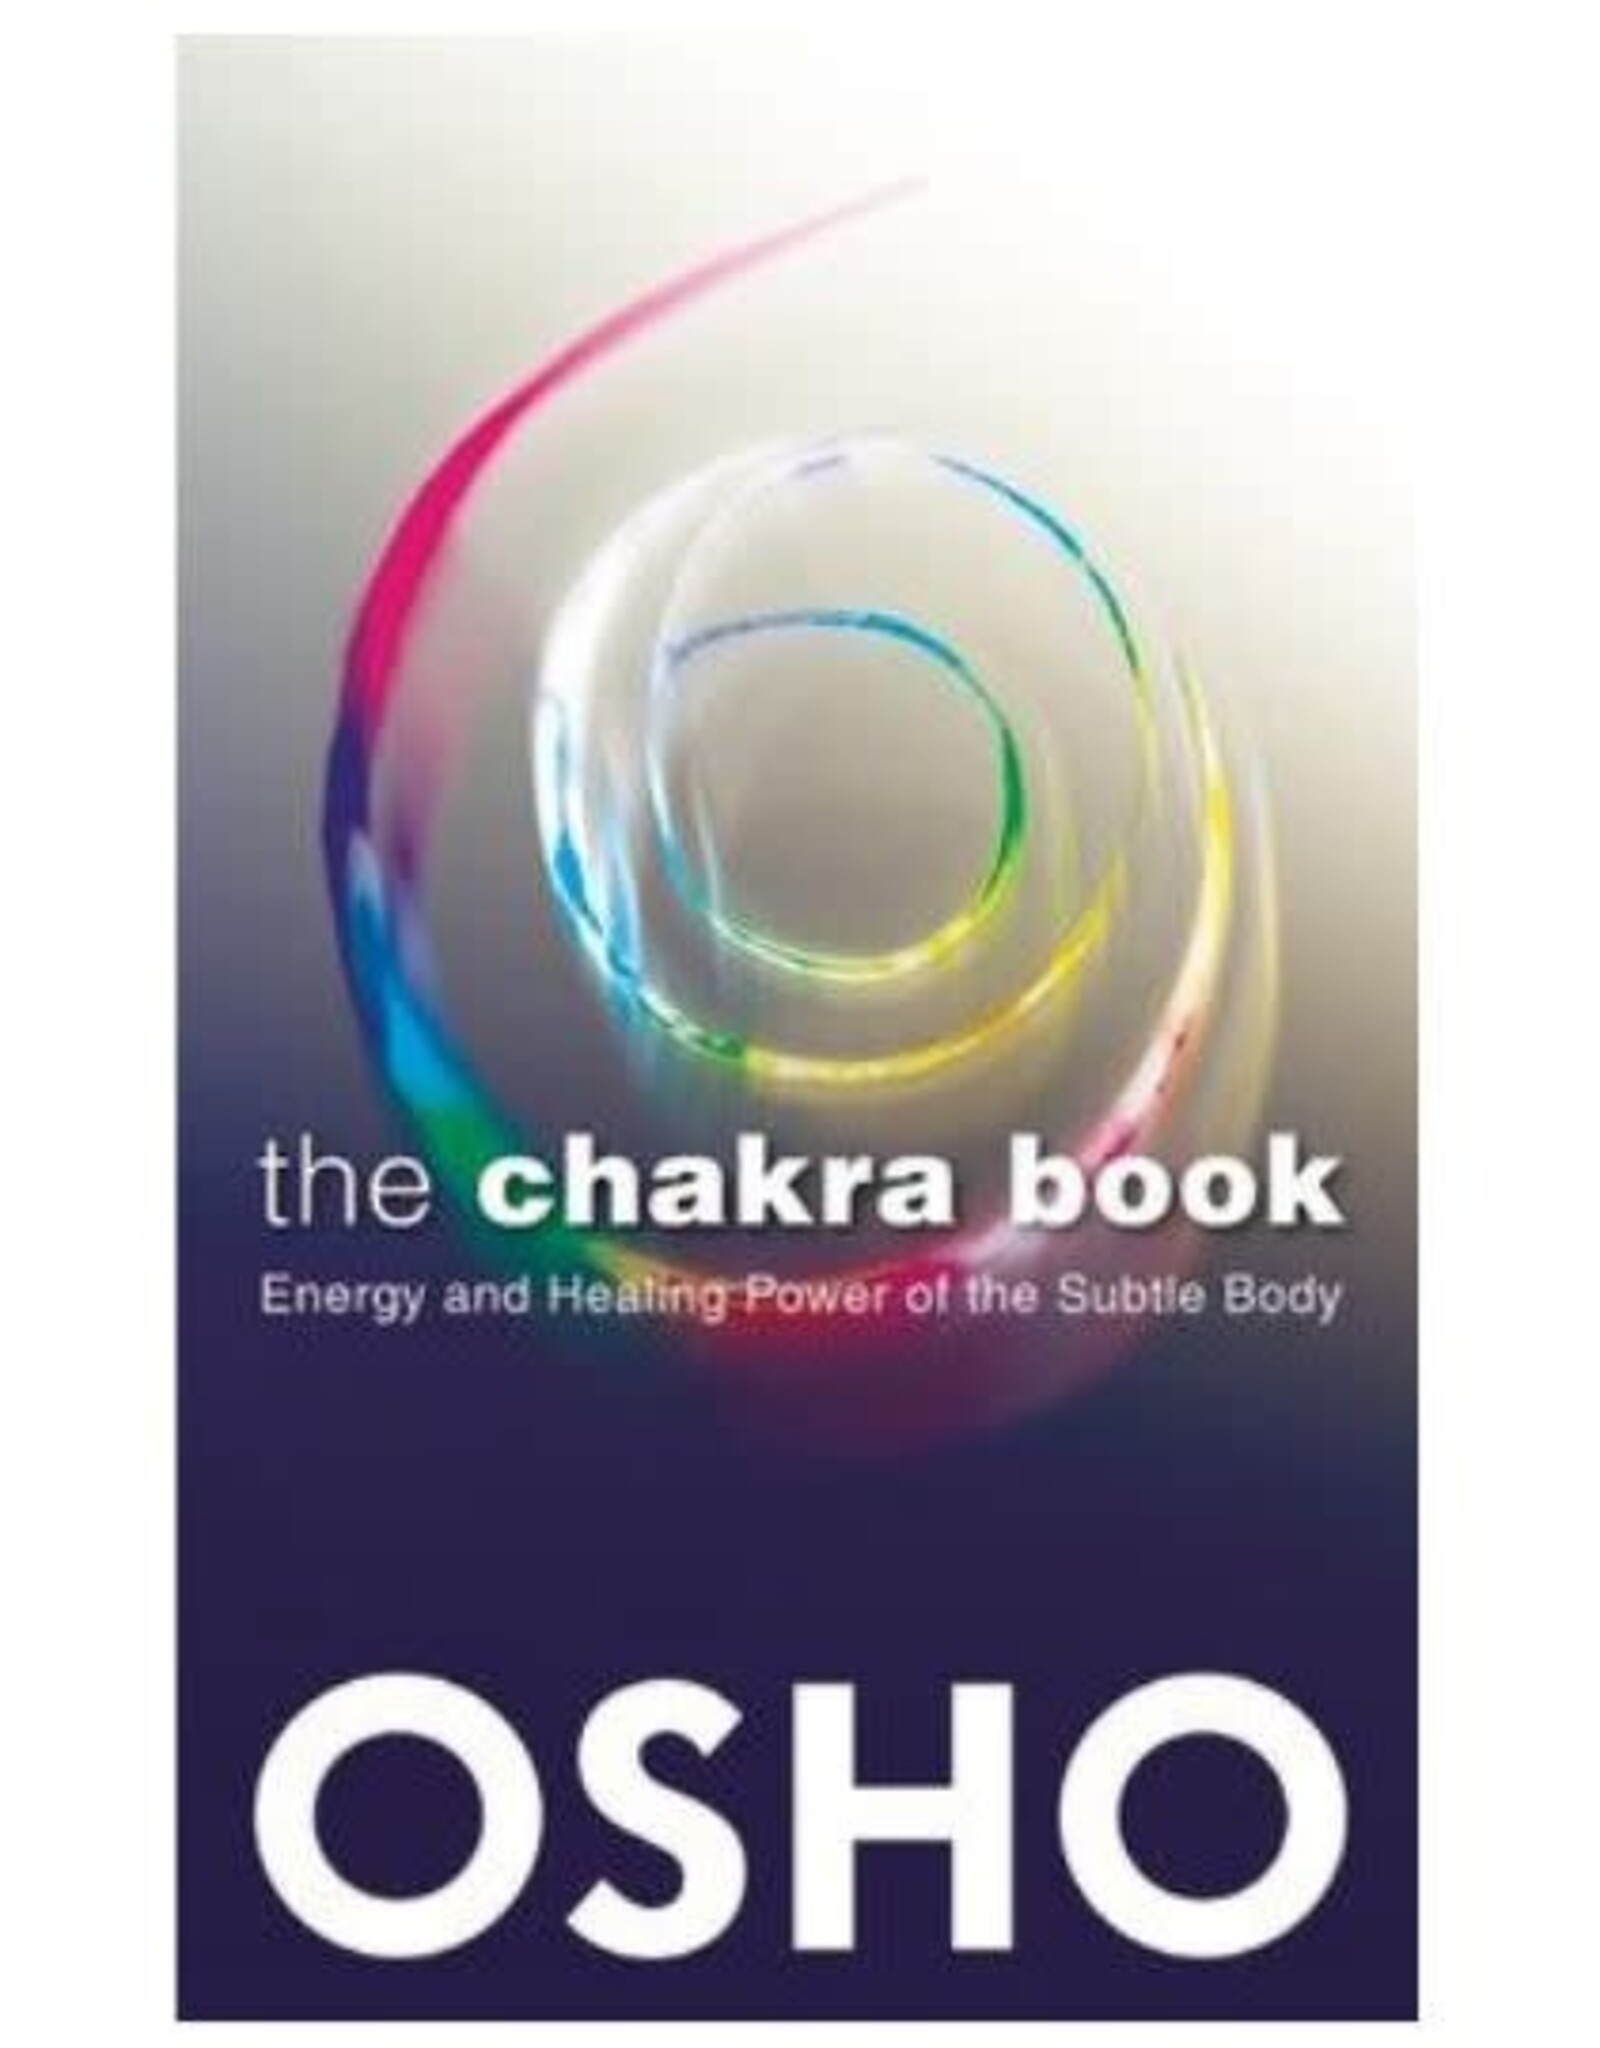 Osho Chakra Book by Osho